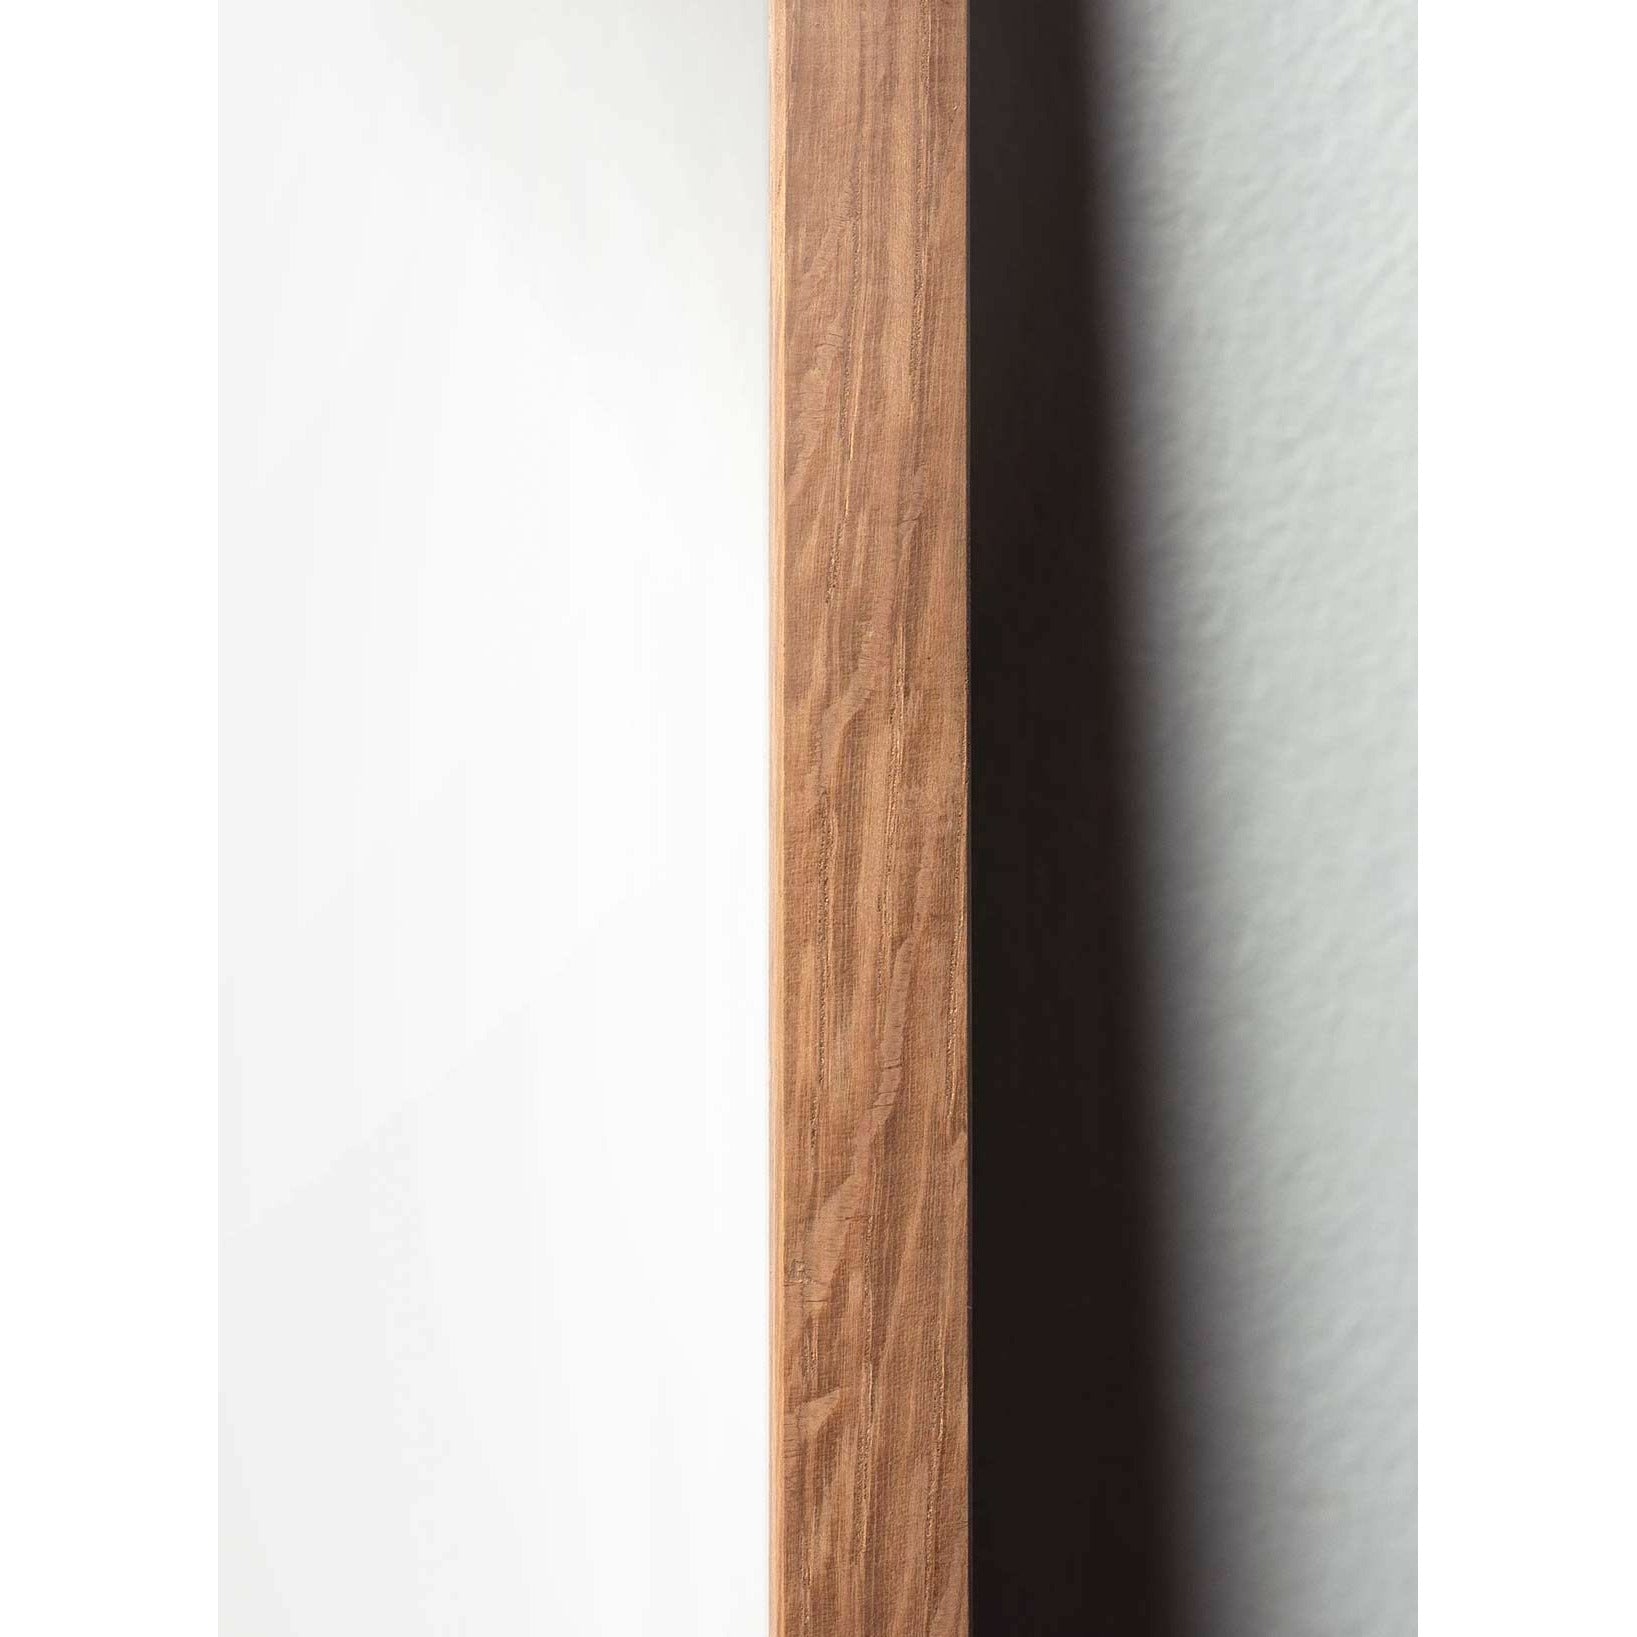 Brainchild Affiche de ligne de cône de pin, cadre en bois clair A5, fond blanc